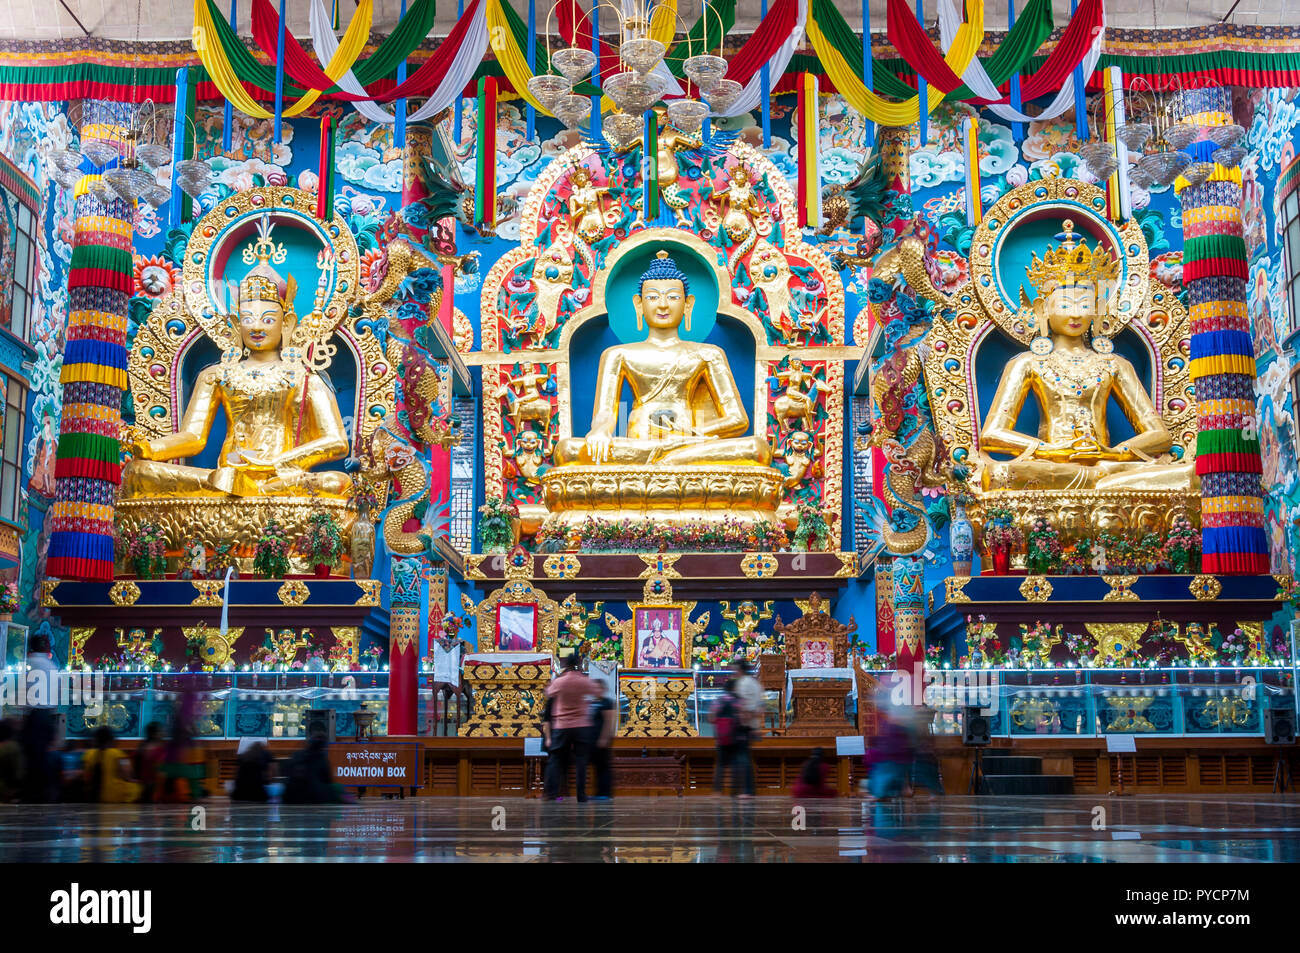 Bylakuppe, Karnataka, India - 9 de enero de 2015: estatuas de 18 metros de alto en el interior del Templo de Oro - Padmasmbhava, Buda y Amitayus. Foto de stock